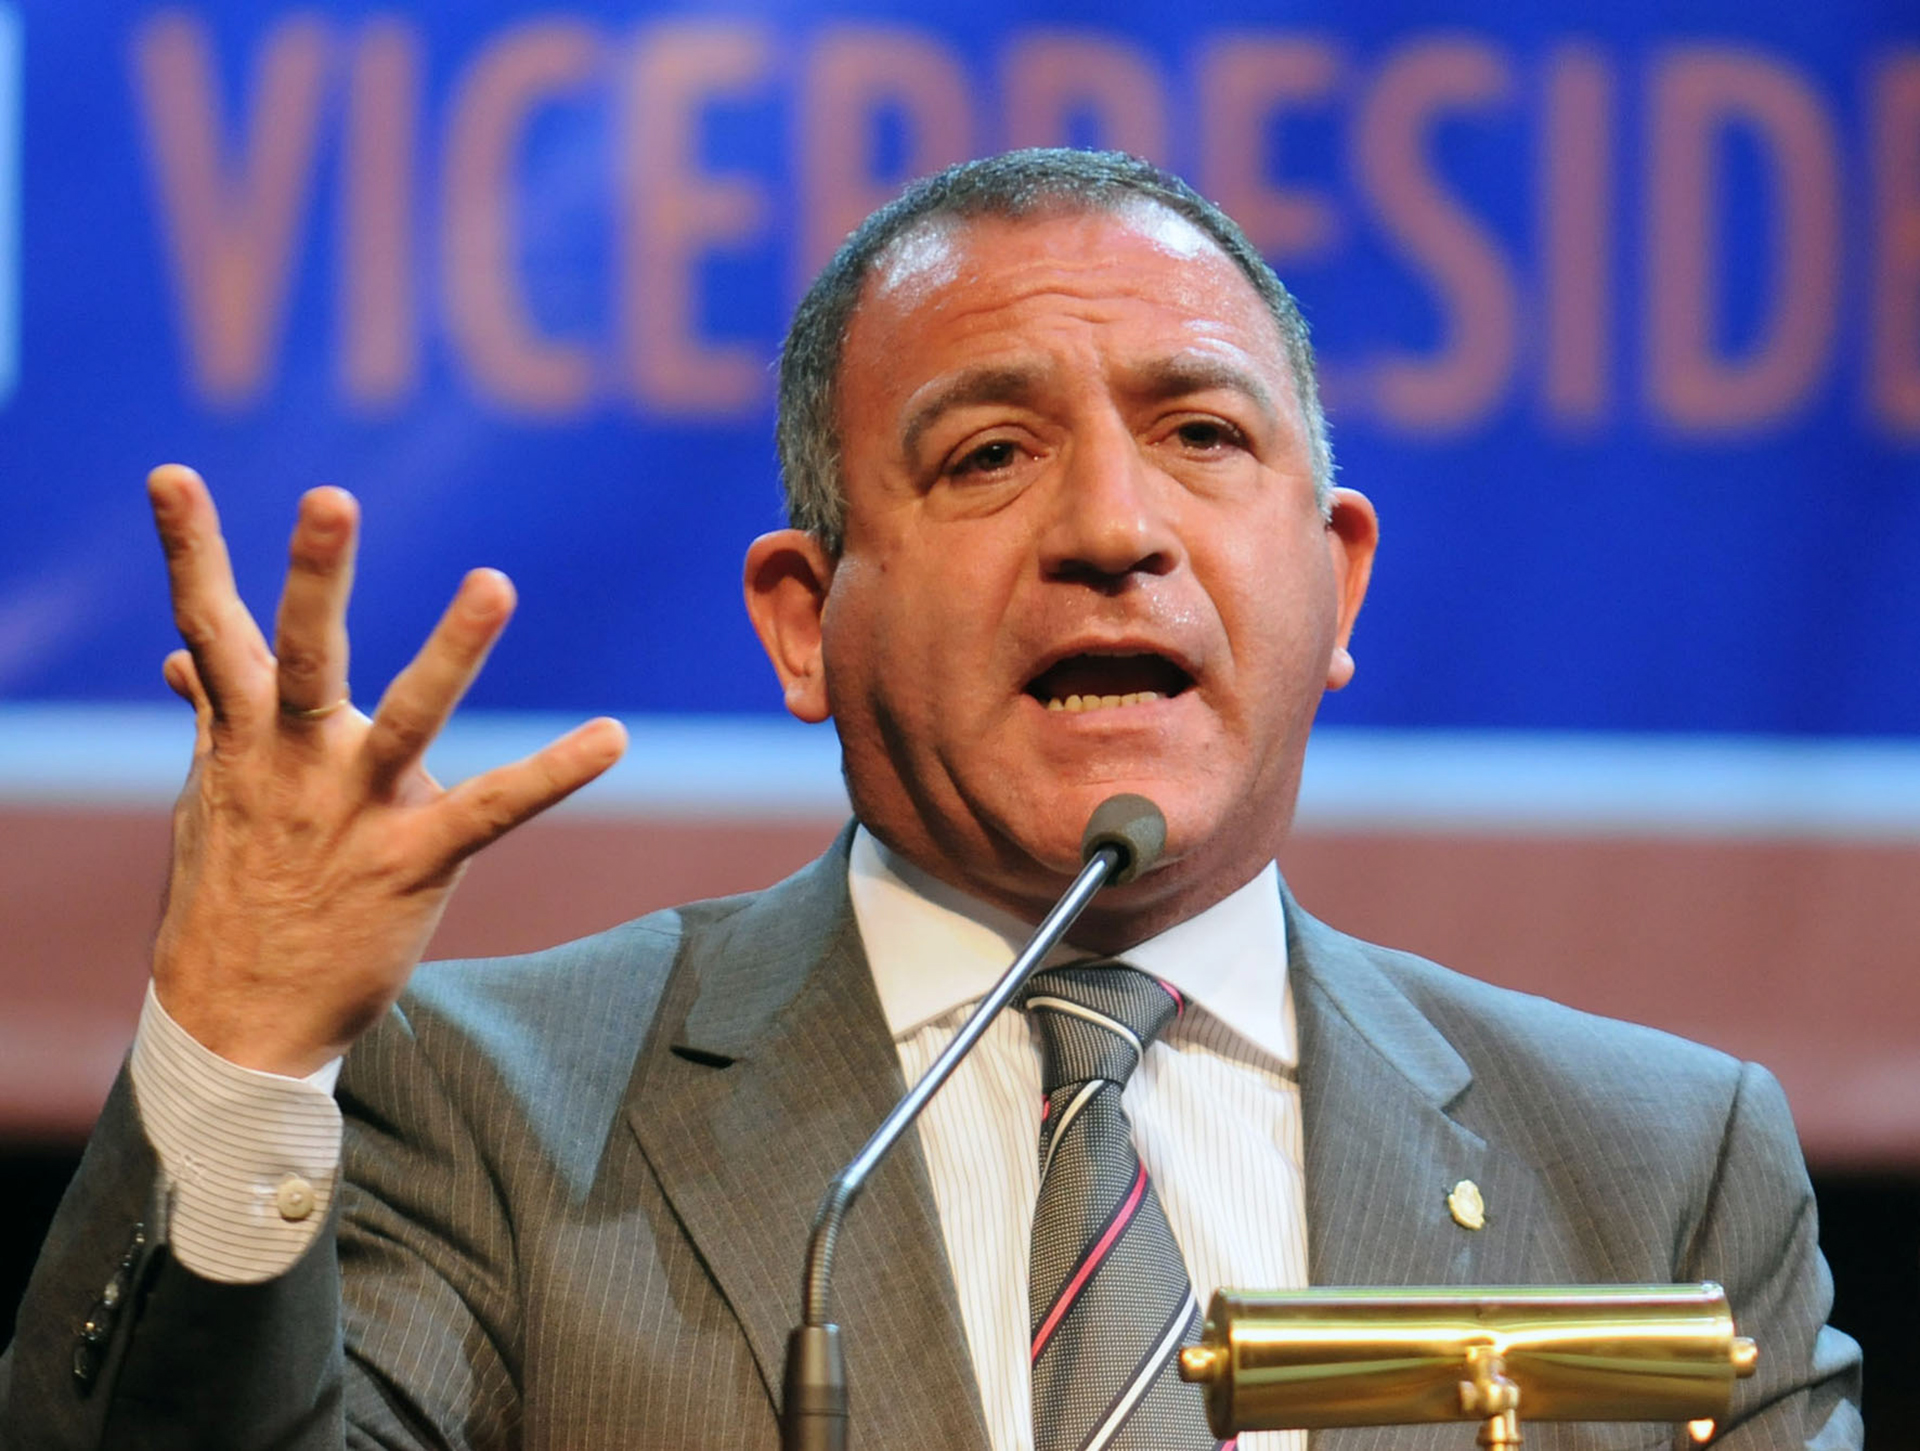 El senador electo Luis Juez embistió contra los jueces que beneficiaron a Cristina Kirchner